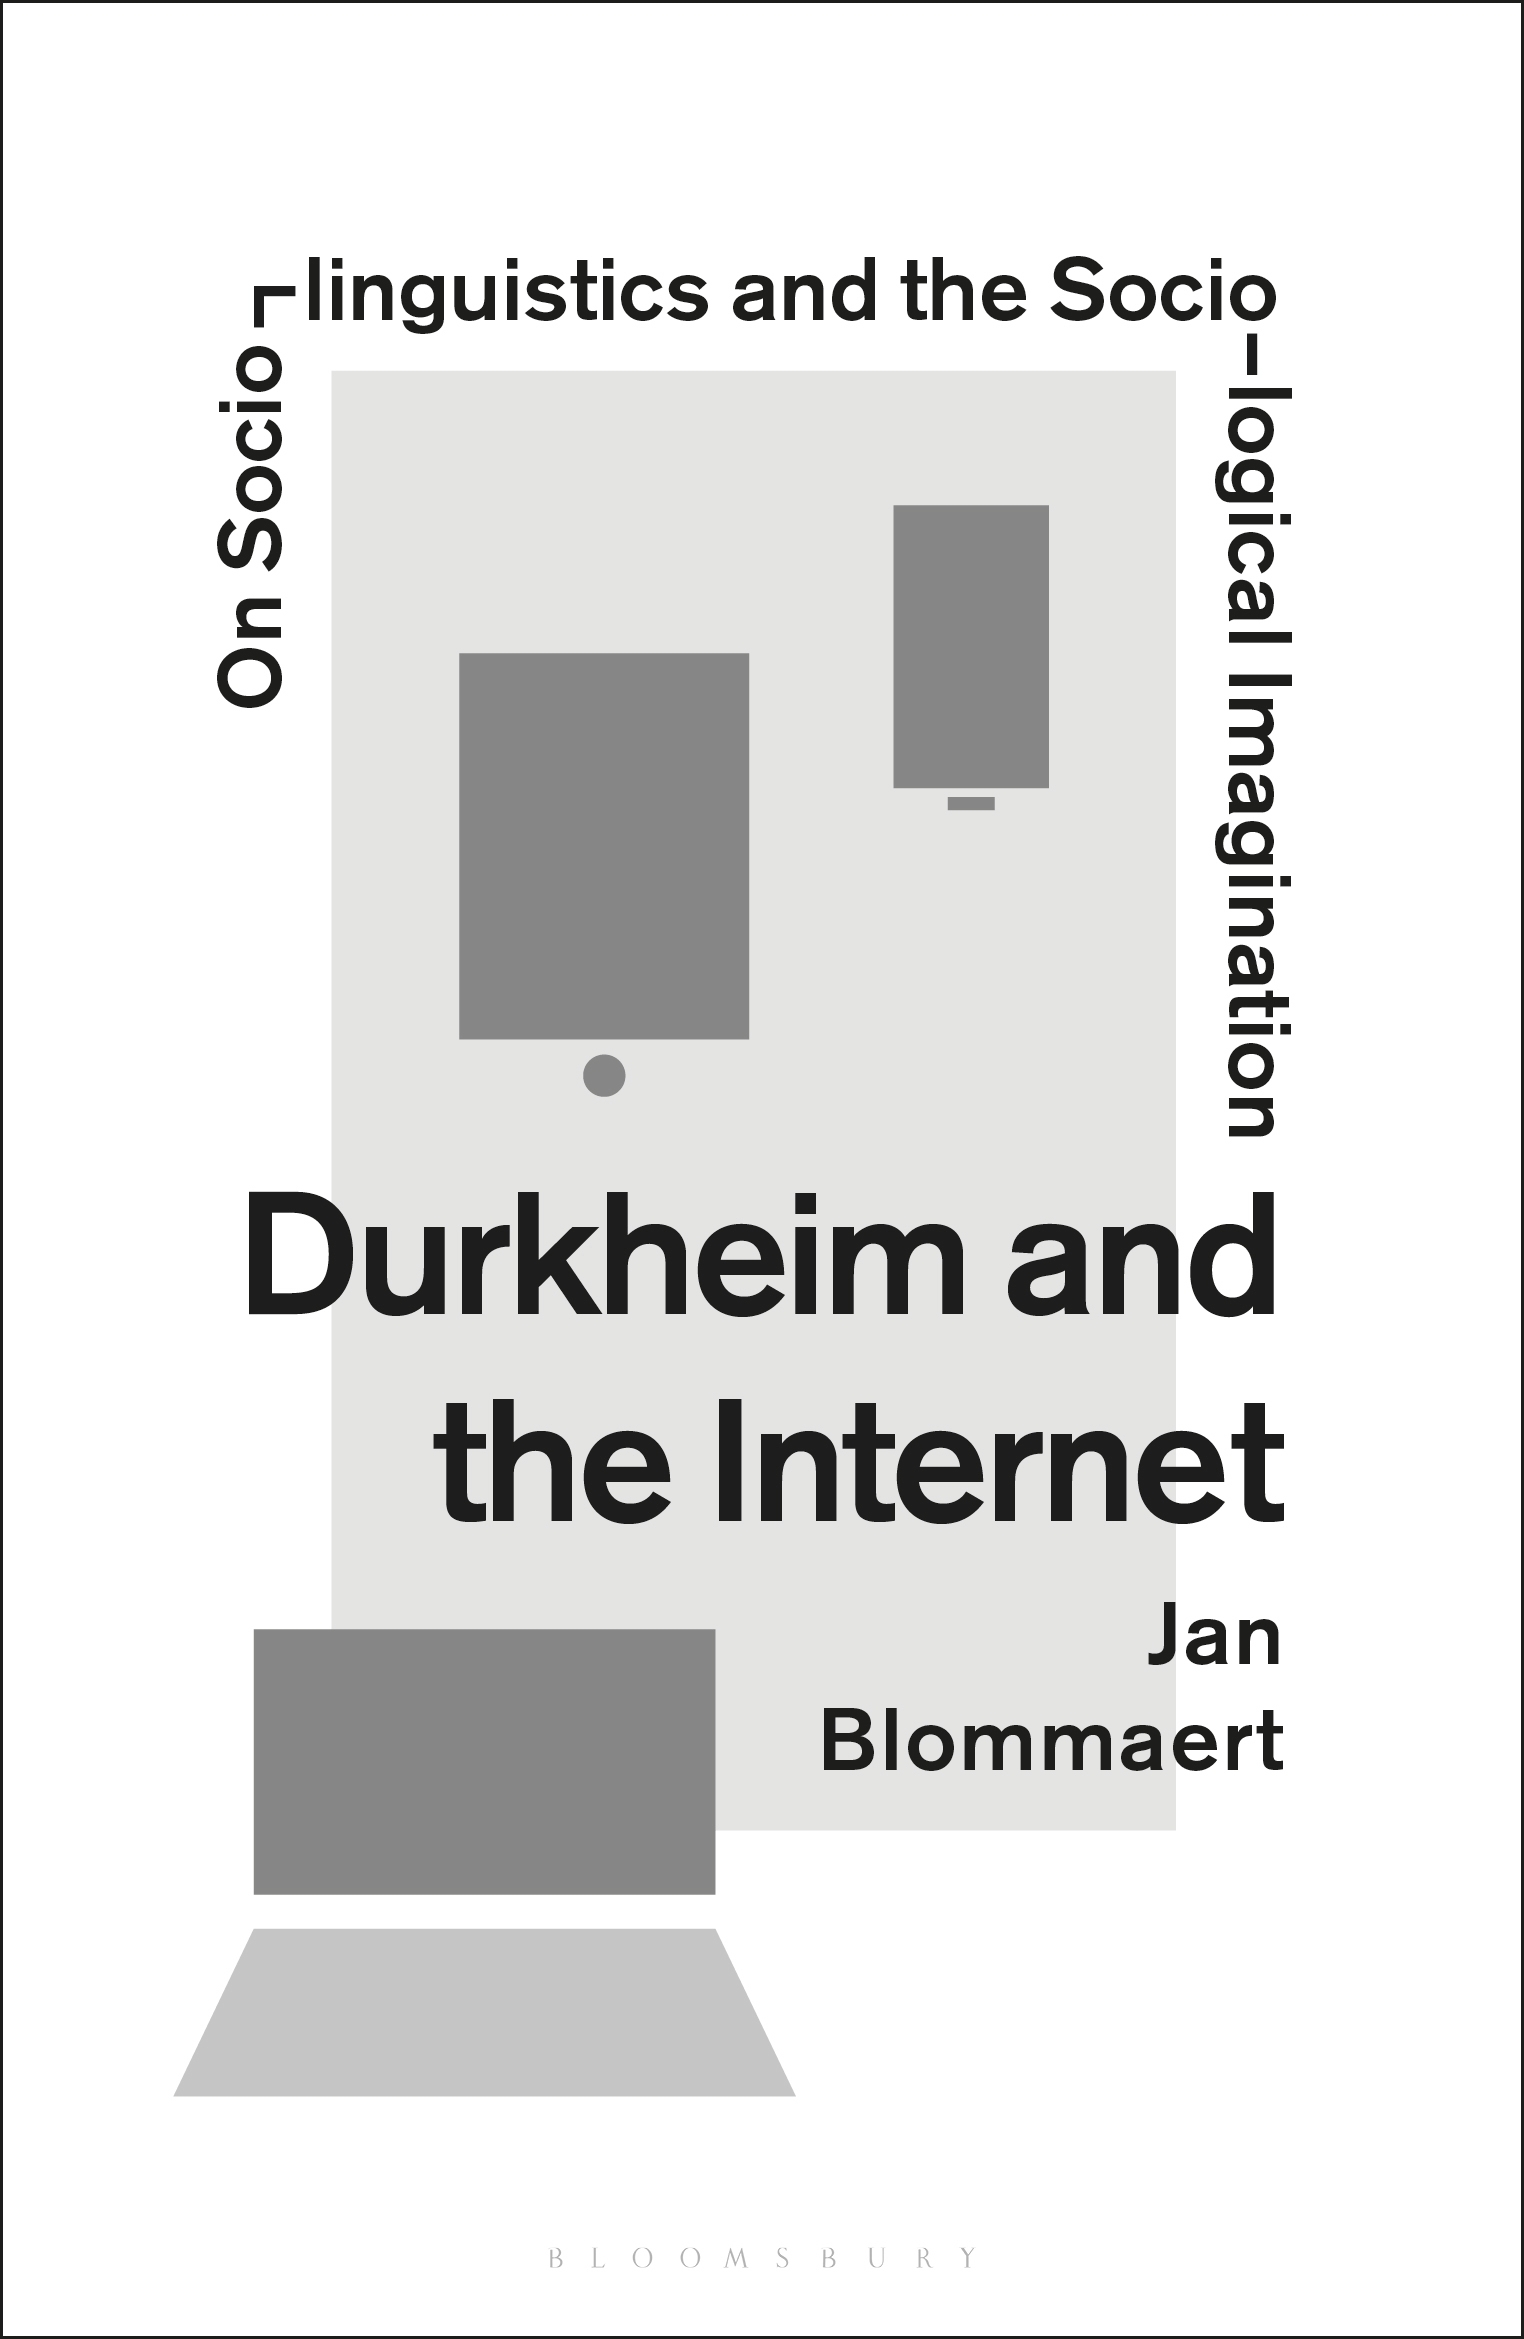 Durkheim and the Internet - 15-24.99